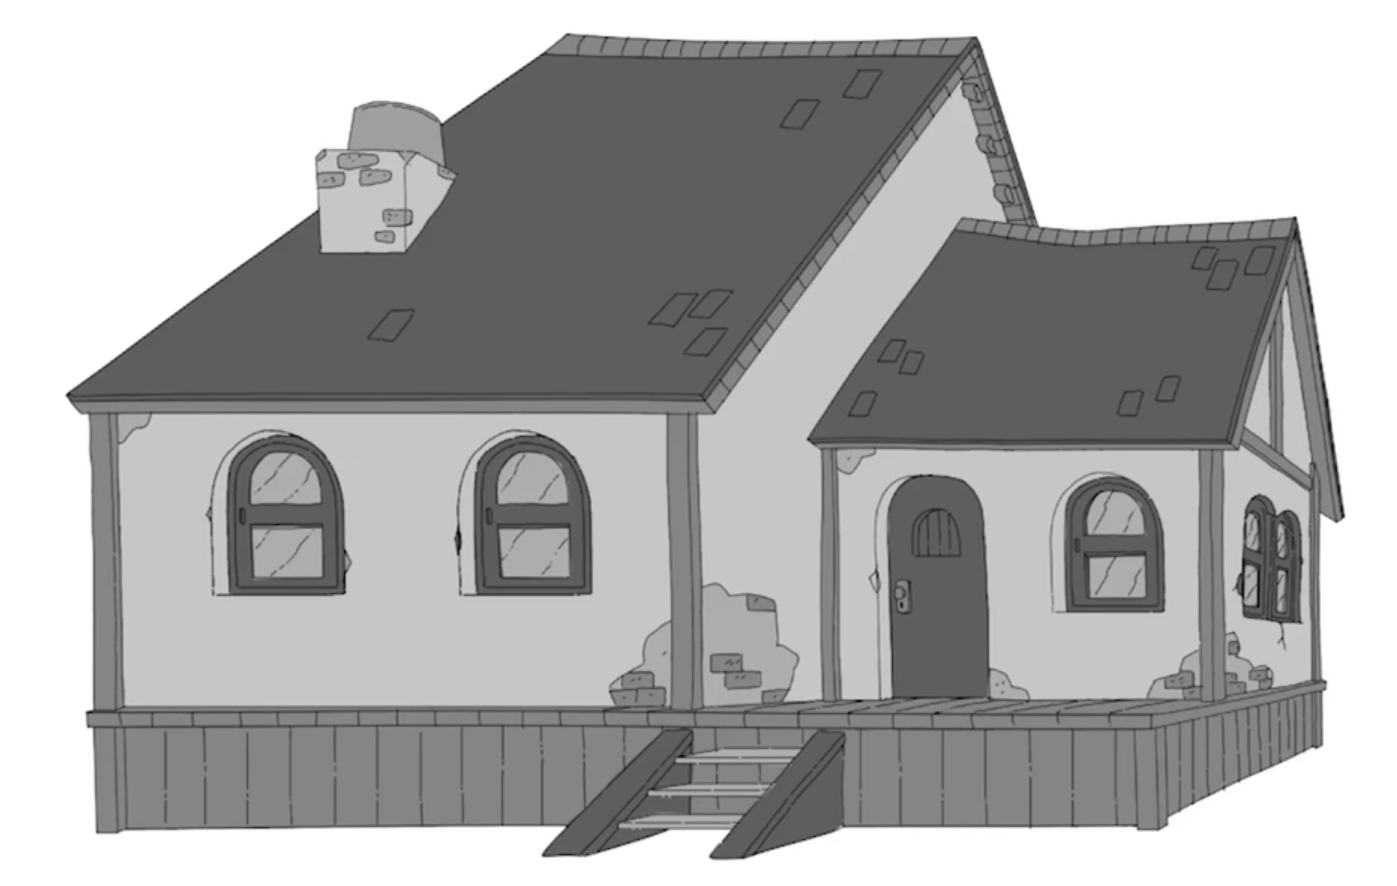 Ilustração da mesma casa da imagem anterior, porém vista lateralmente.